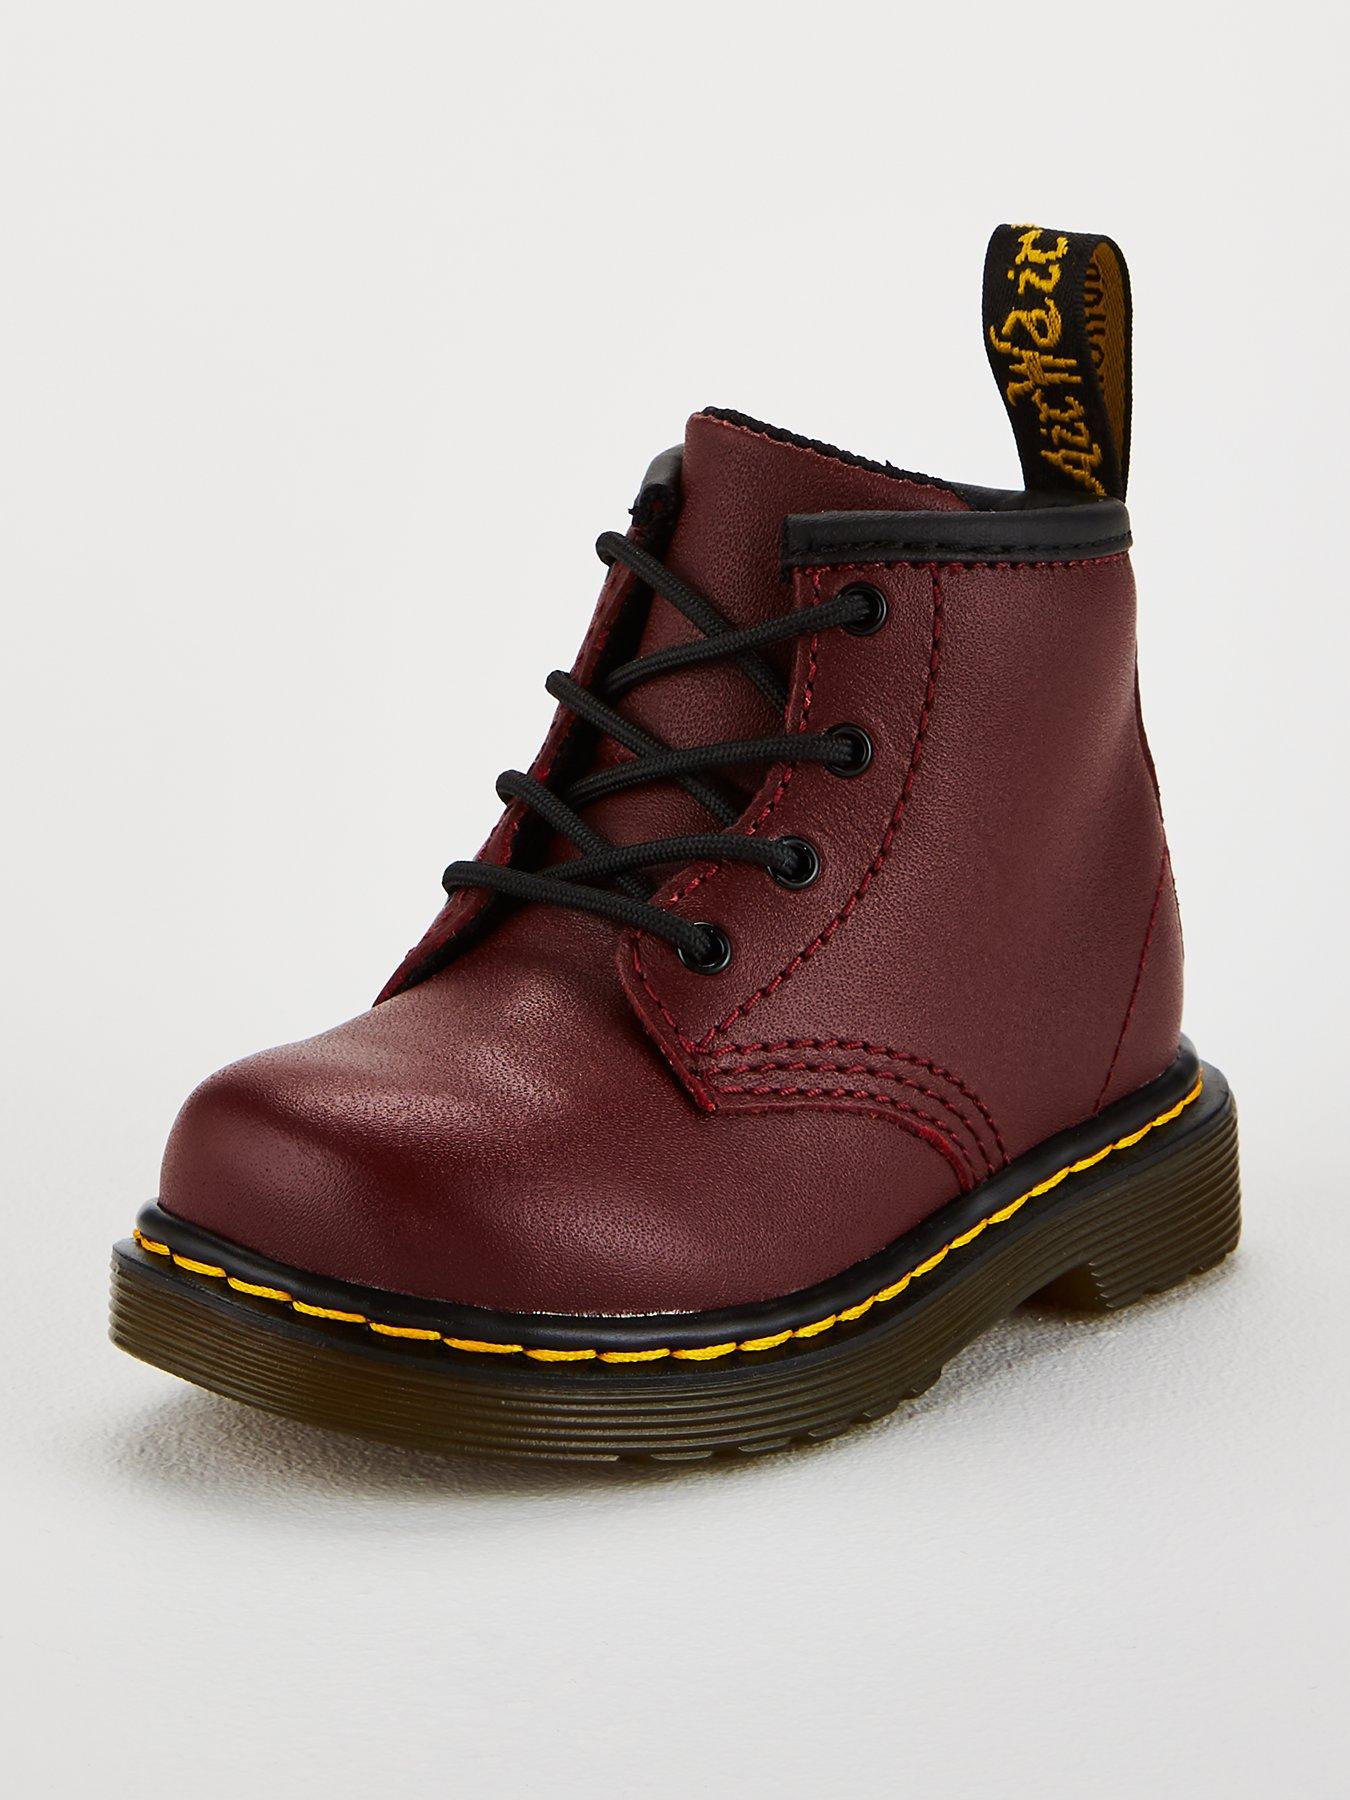 Dr martens | Shoes \u0026 boots | Child 